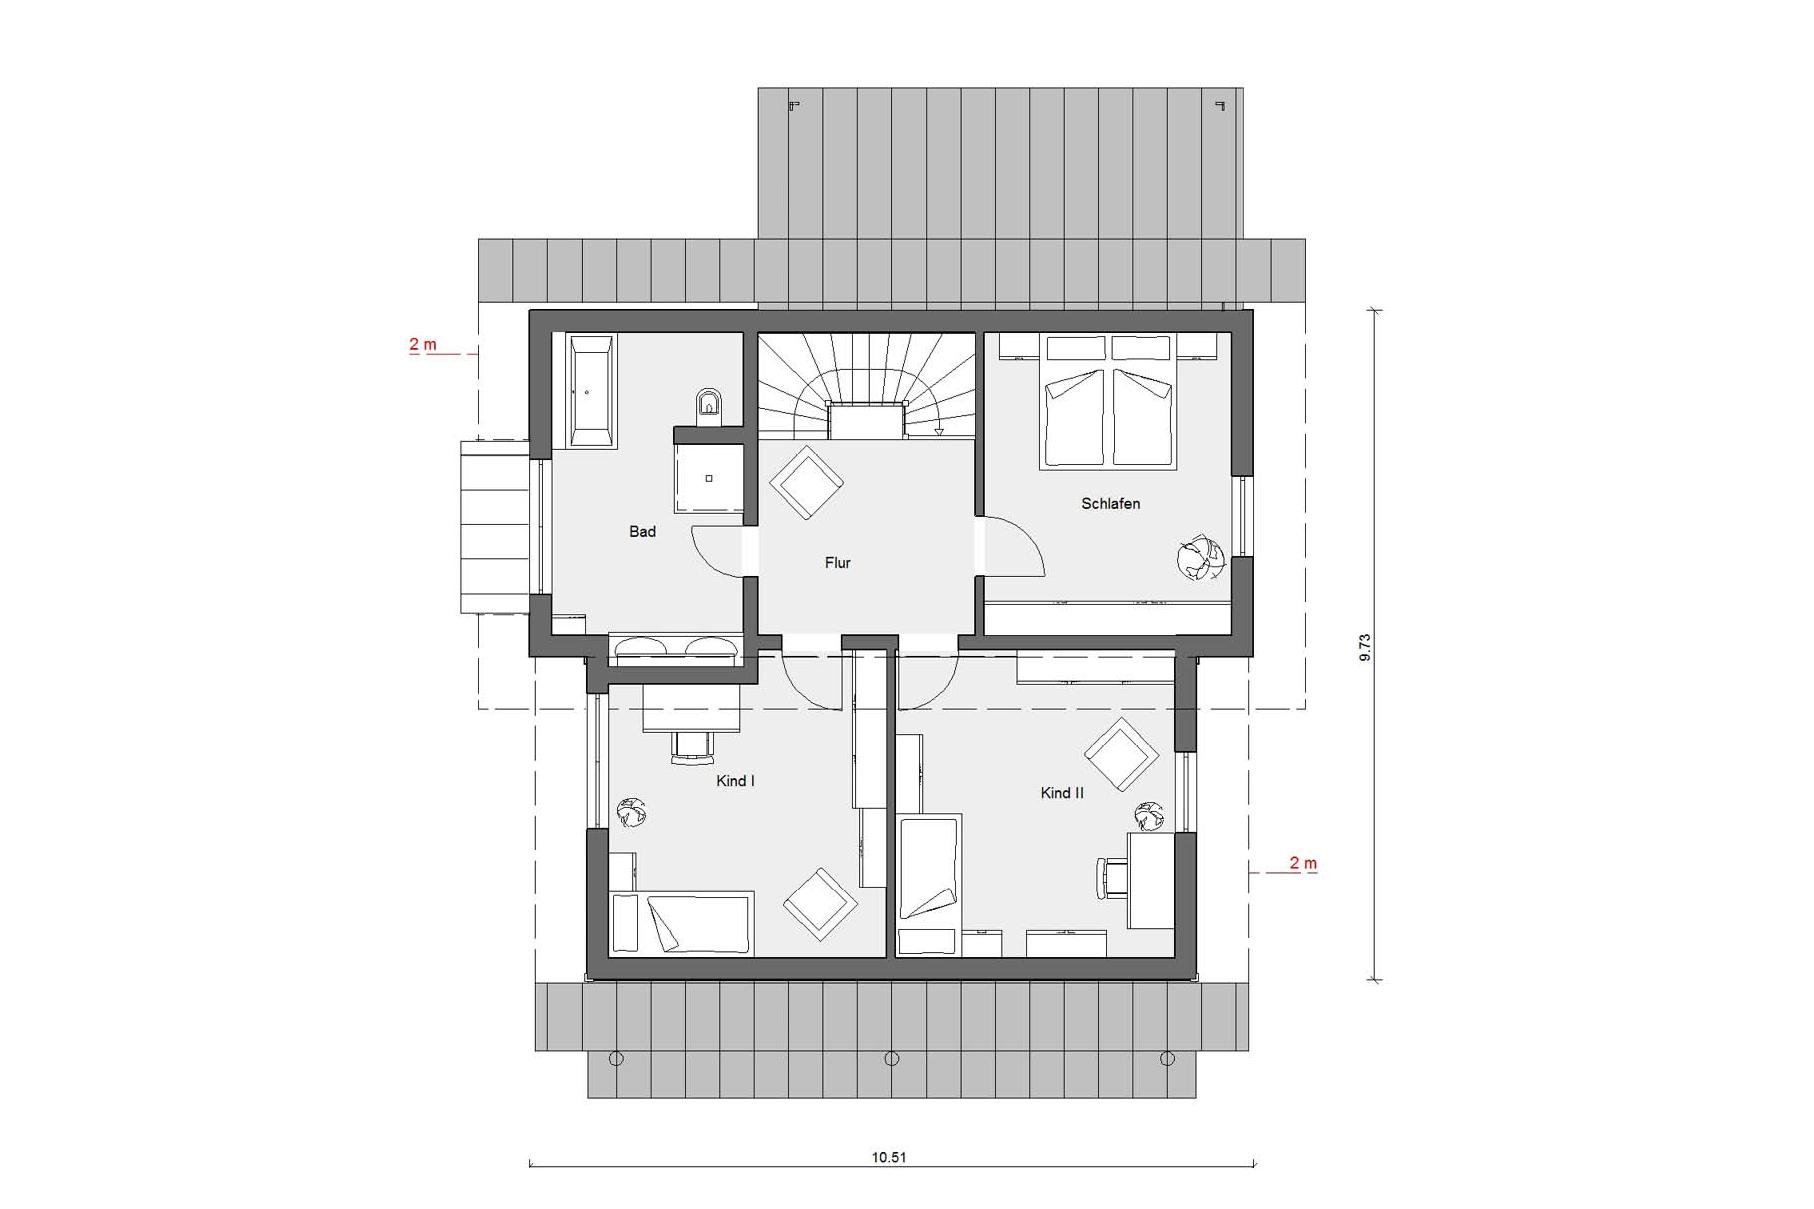 Attic floor plan prefab house with wood E 15-154.1